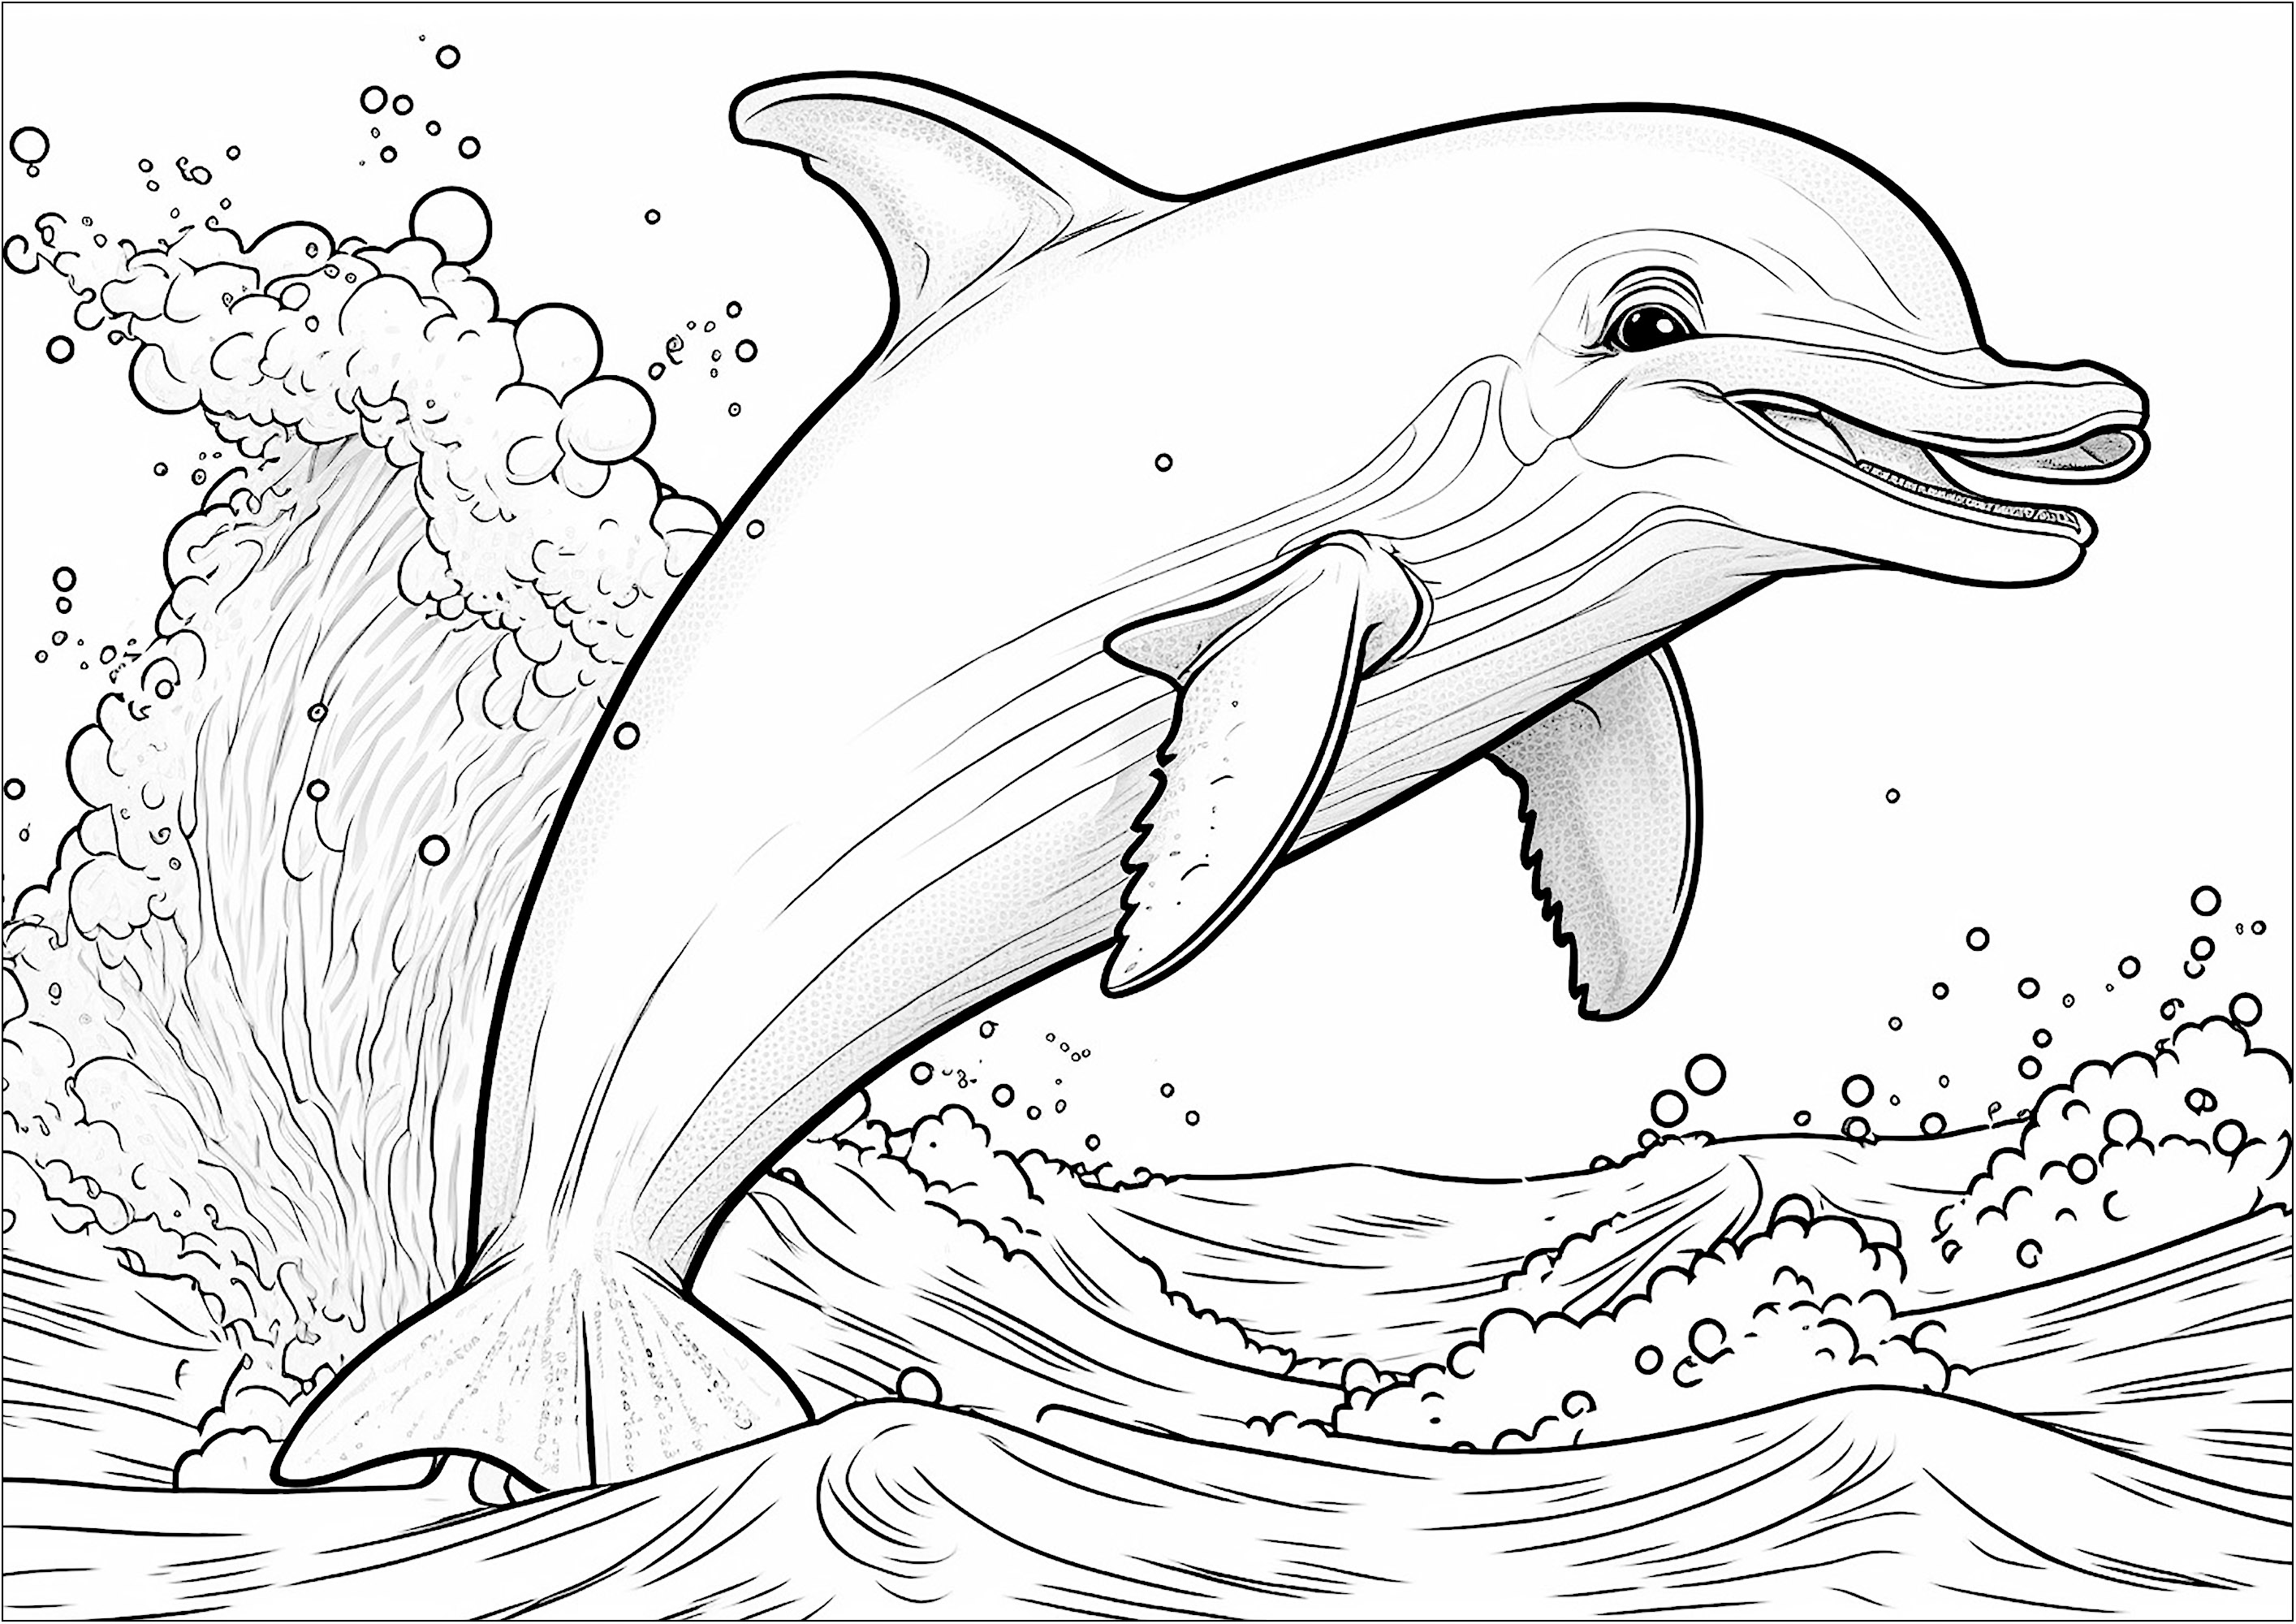 Coloriage d'un dauphin sautant hors de l'eau. Ce coloriage est parfait pour les enfants qui adorent les animaux marins. Le dessin représente un dauphin souriant qui saute joyeusement hors de l'eau.